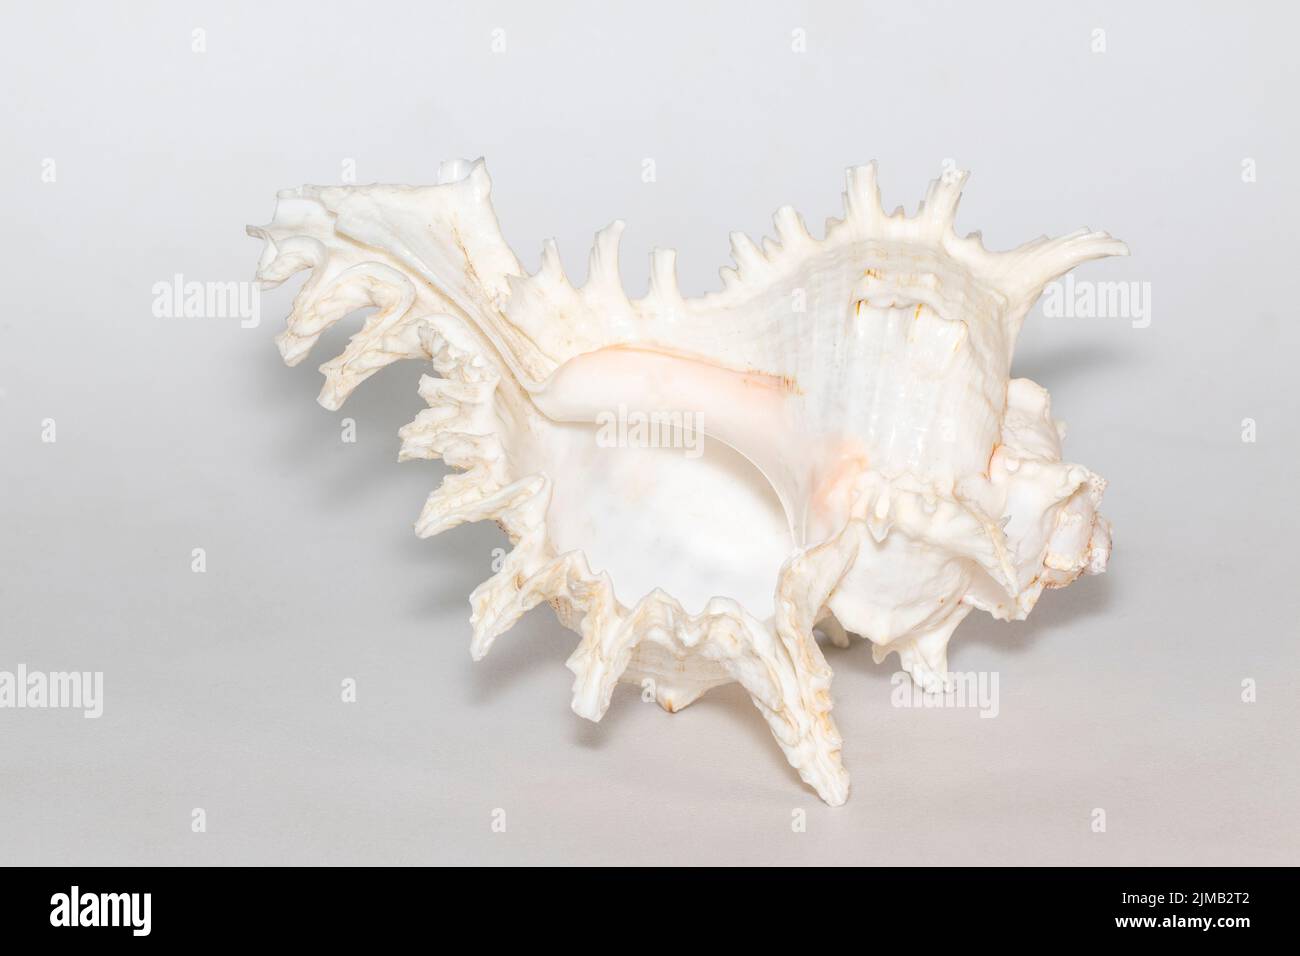 Image de chicorée ramosus seashell sur fond blanc. Coquillages. Animaux sous-marins. Banque D'Images